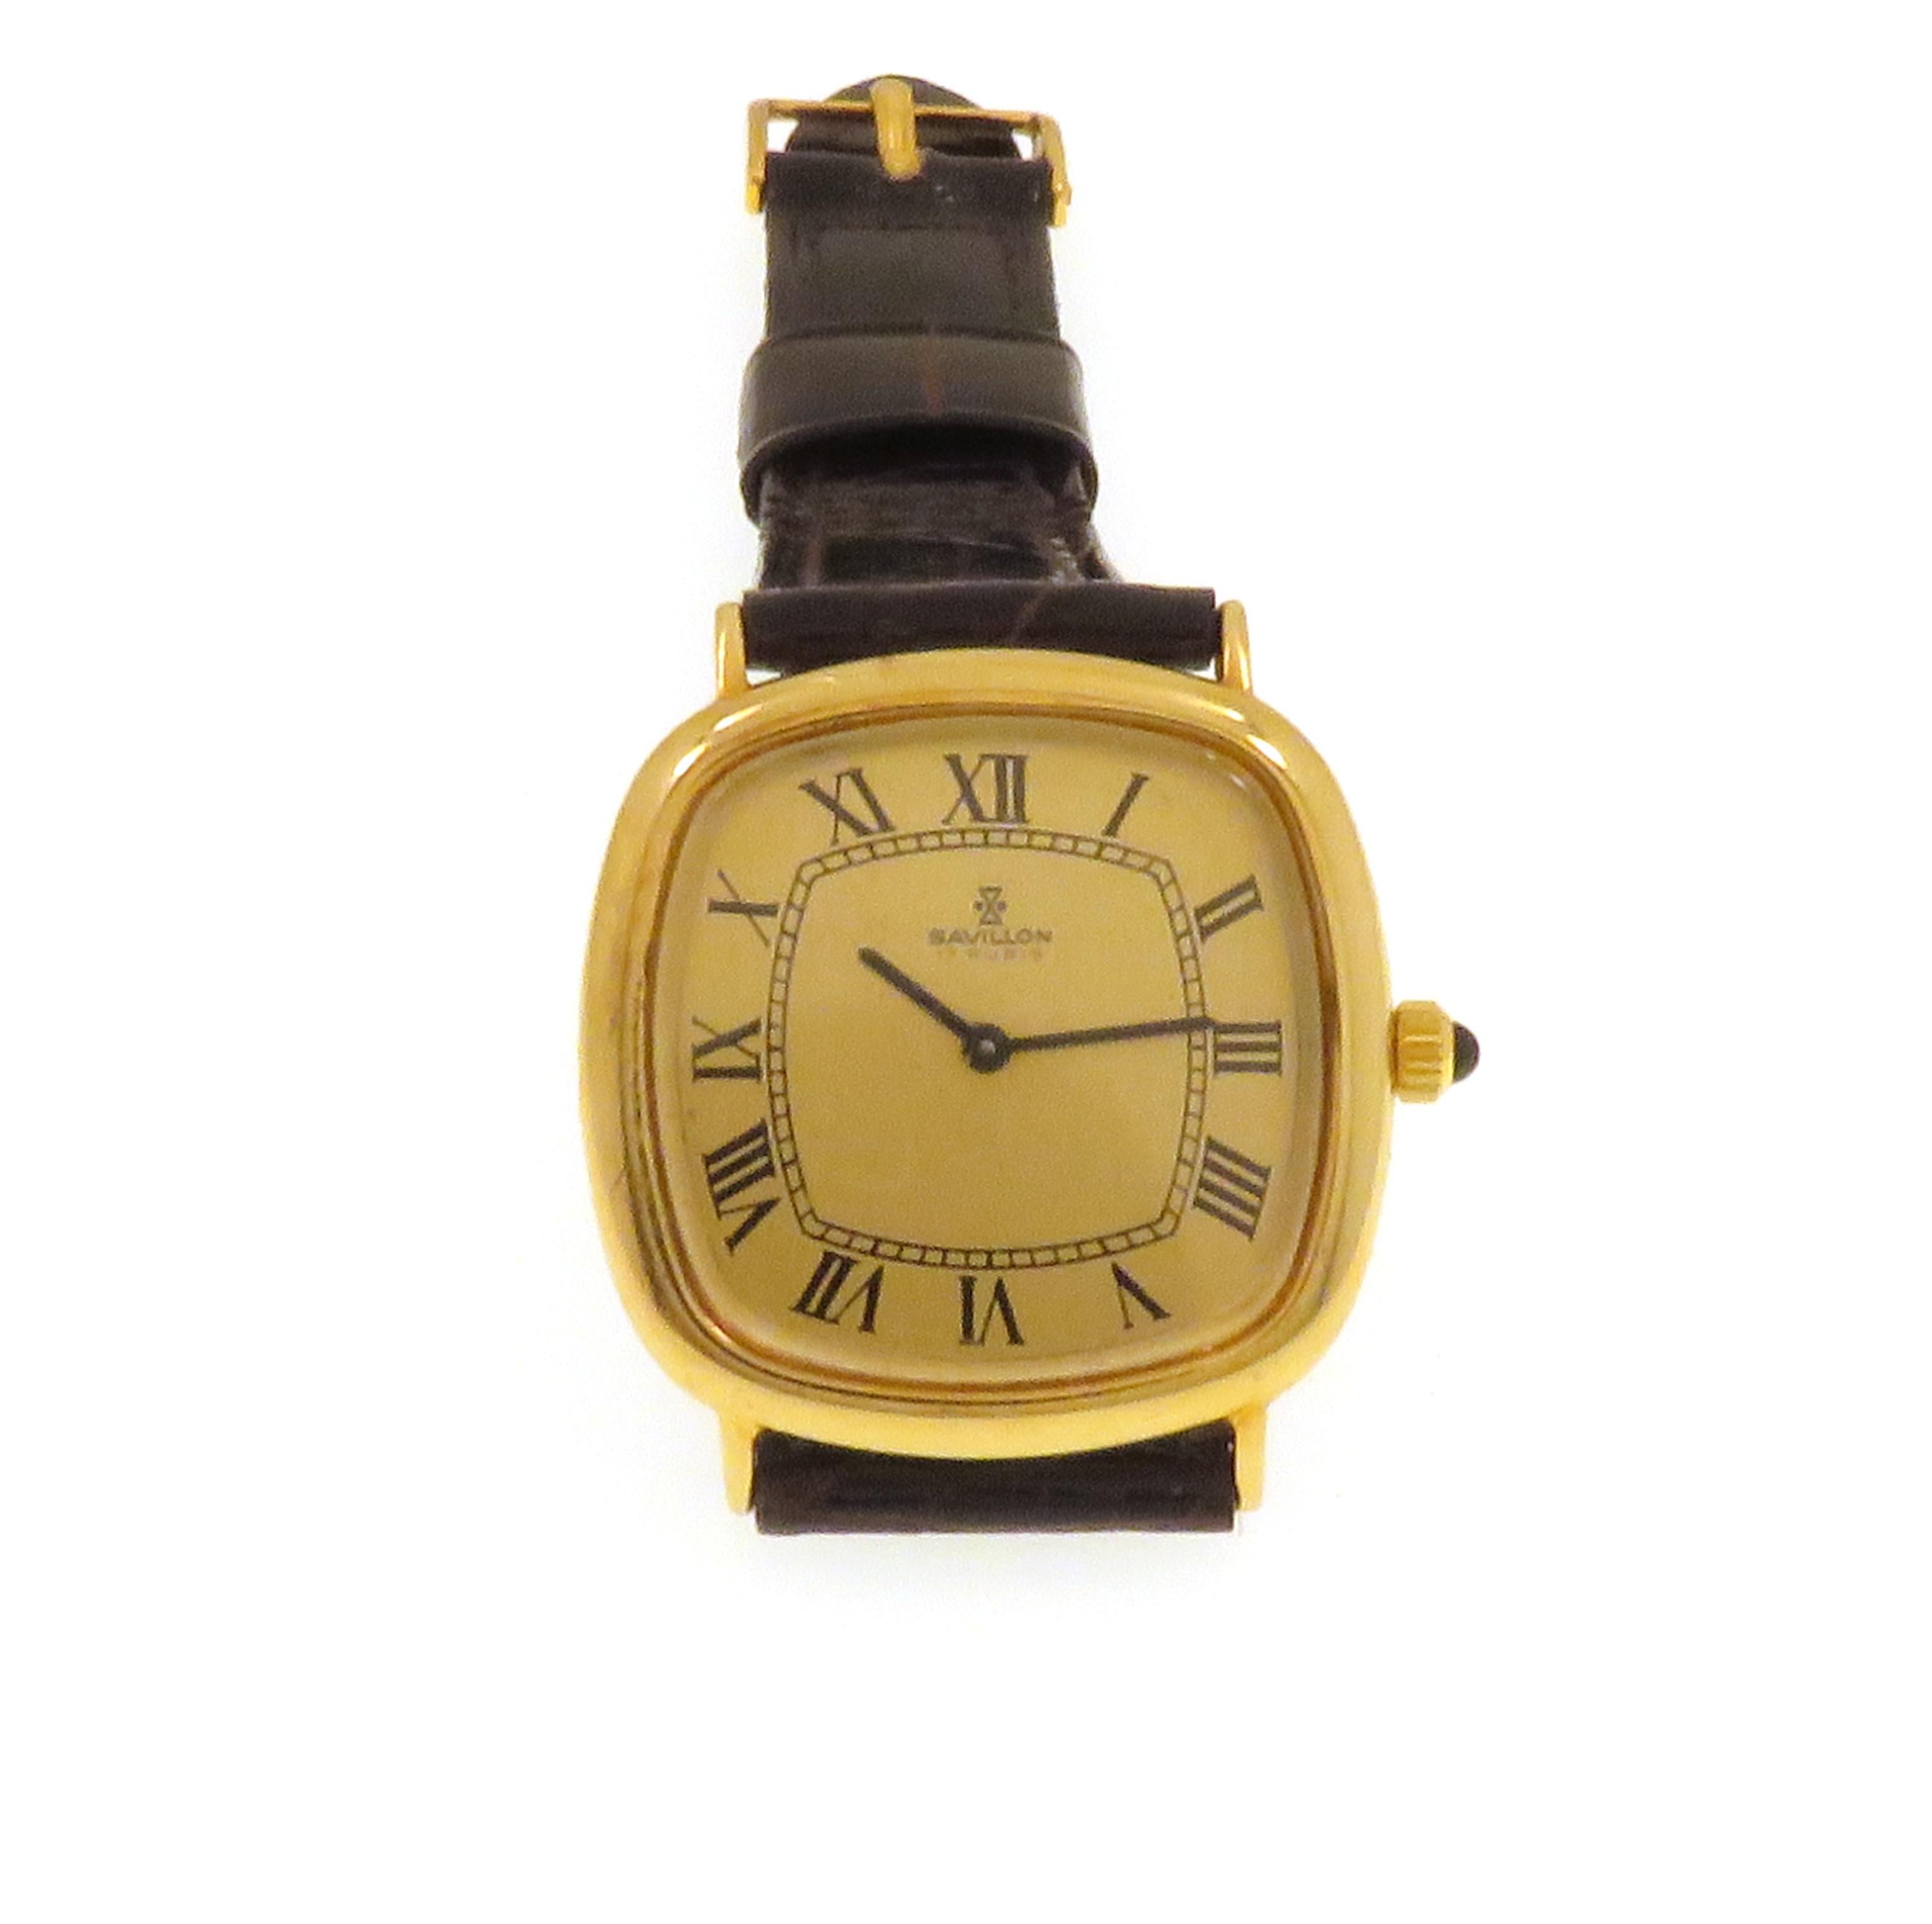 Orologio da polso meccanico a carica manuale in oro giallo 18k fabbricato in Svizzera negli anni  '70. L'orologio è funzionante ma non revisionato recentemente. Cassa in oro massiccio del peso di 12.5 grammi.
La Savillon fu acquisita negli anni '50